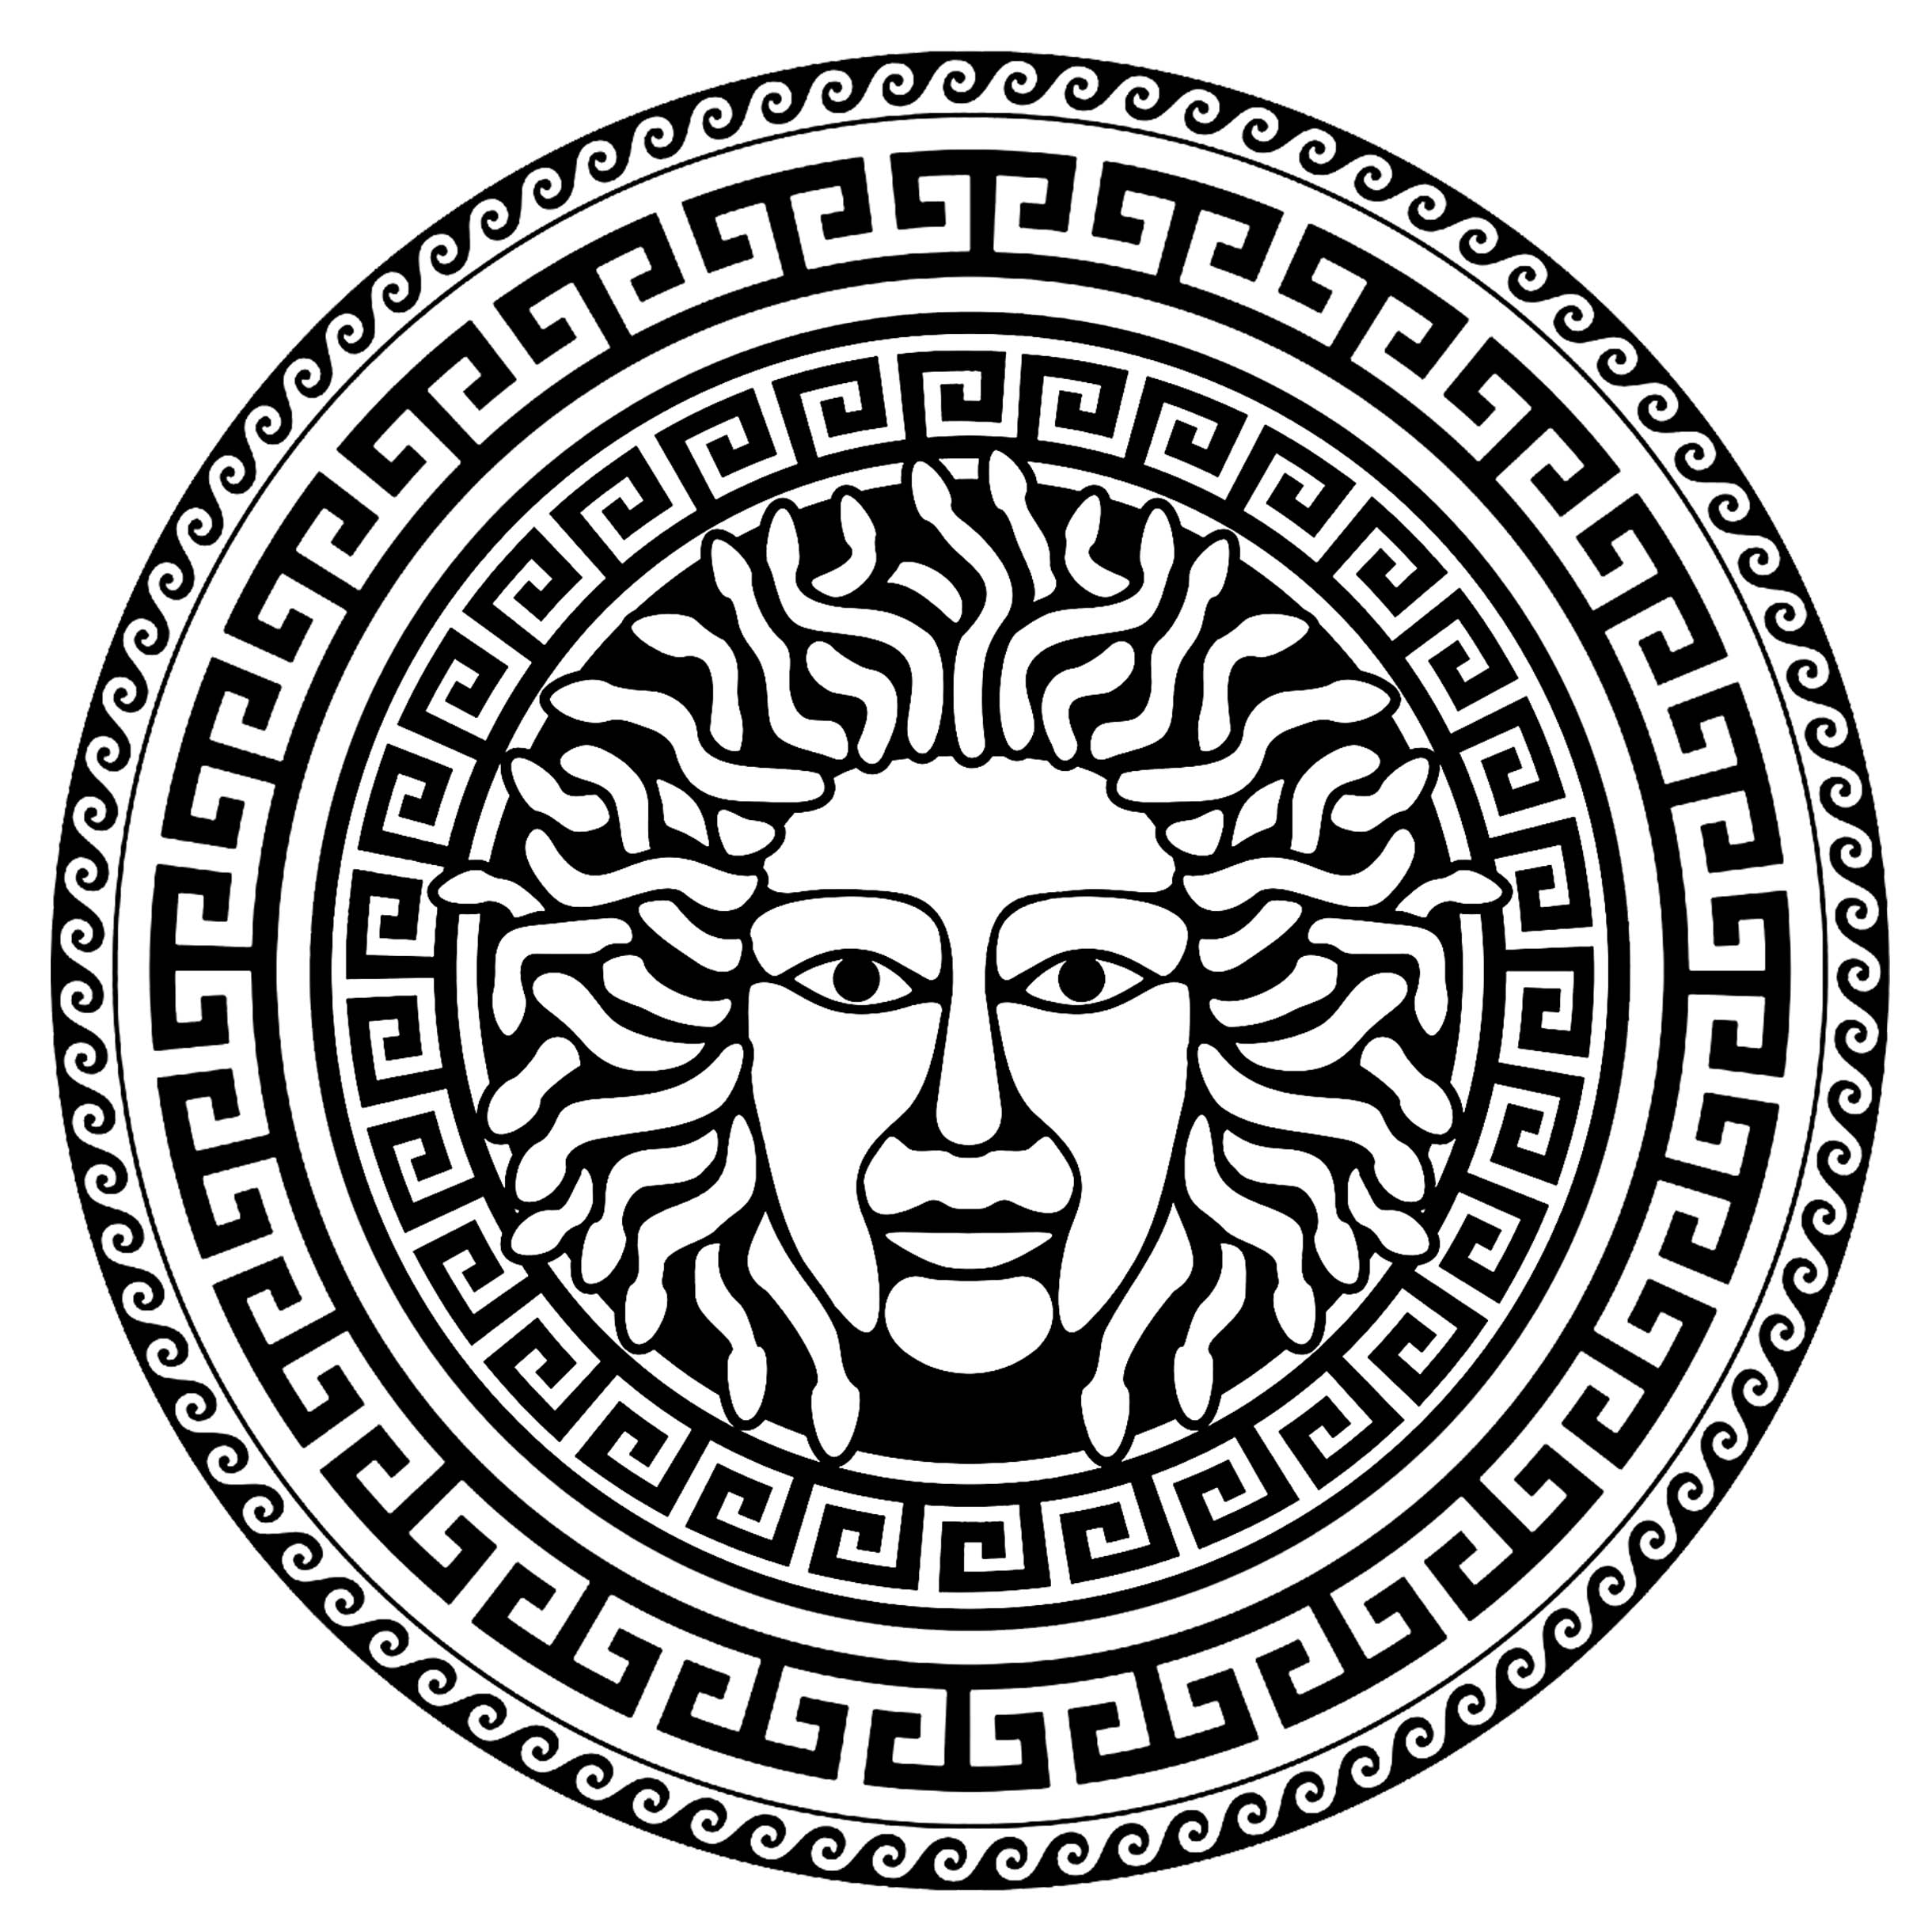 Medusa no centro de um círculo de motivos gregos típicos - 2. A Medusa é uma das três górgonas da mitologia grega, famosa pelo seu cabelo em forma de serpente e pelo seu olhar petrificante. Segundo a lenda, foi decapitada pelo herói Perseu, que usou o seu poder para derrotar os seus inimigos.